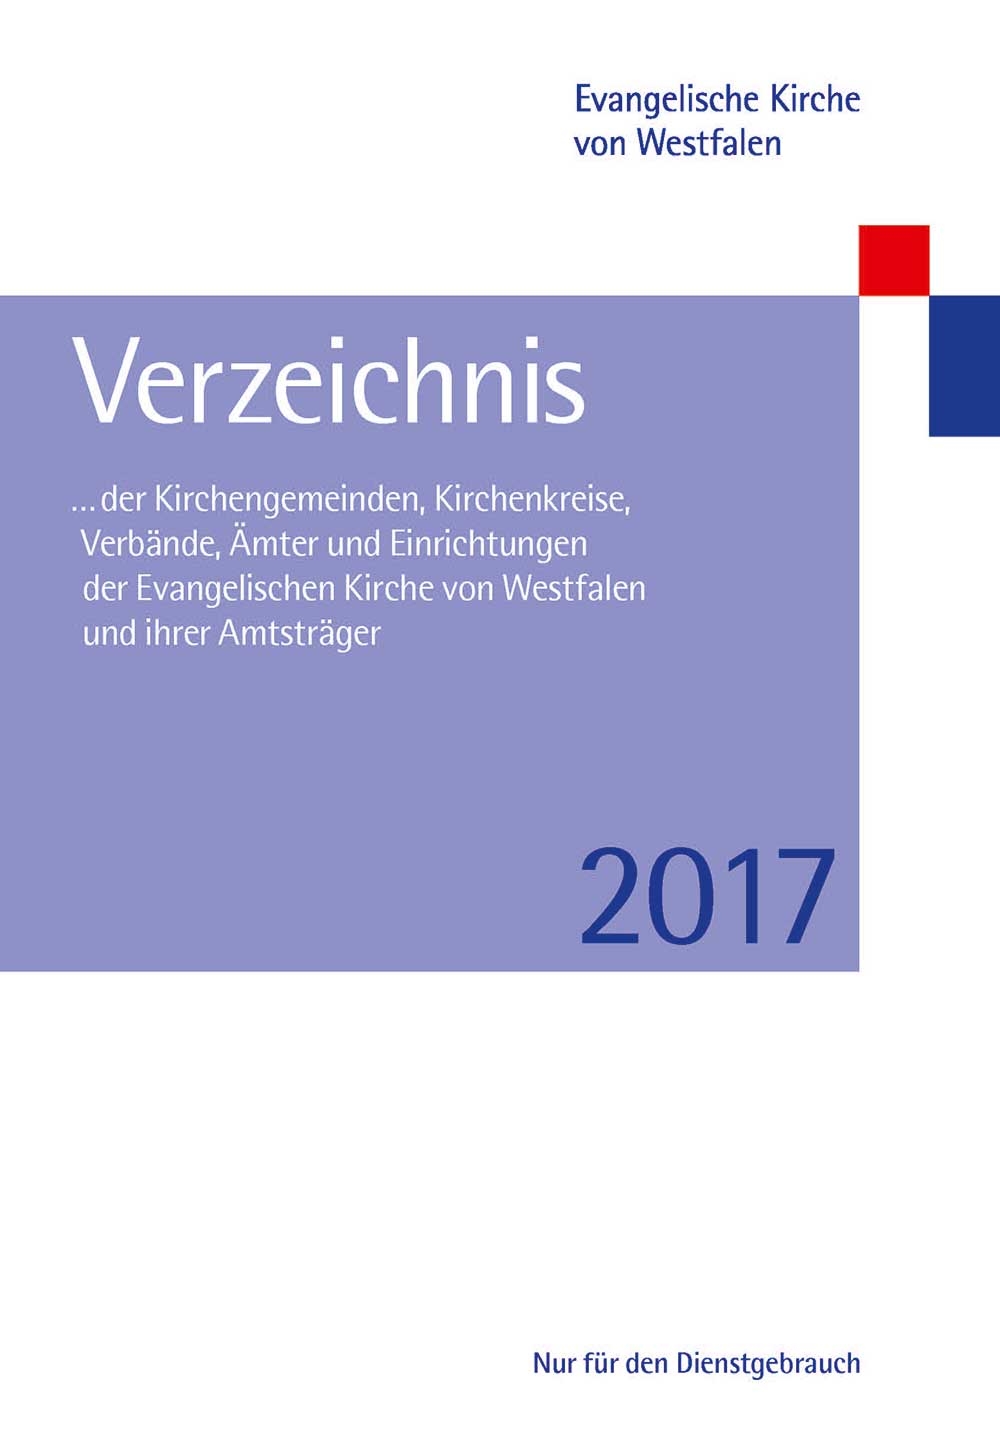 Gemeindeverzeichnis der Evangelischen Kirche von Westfalen (EKvW)